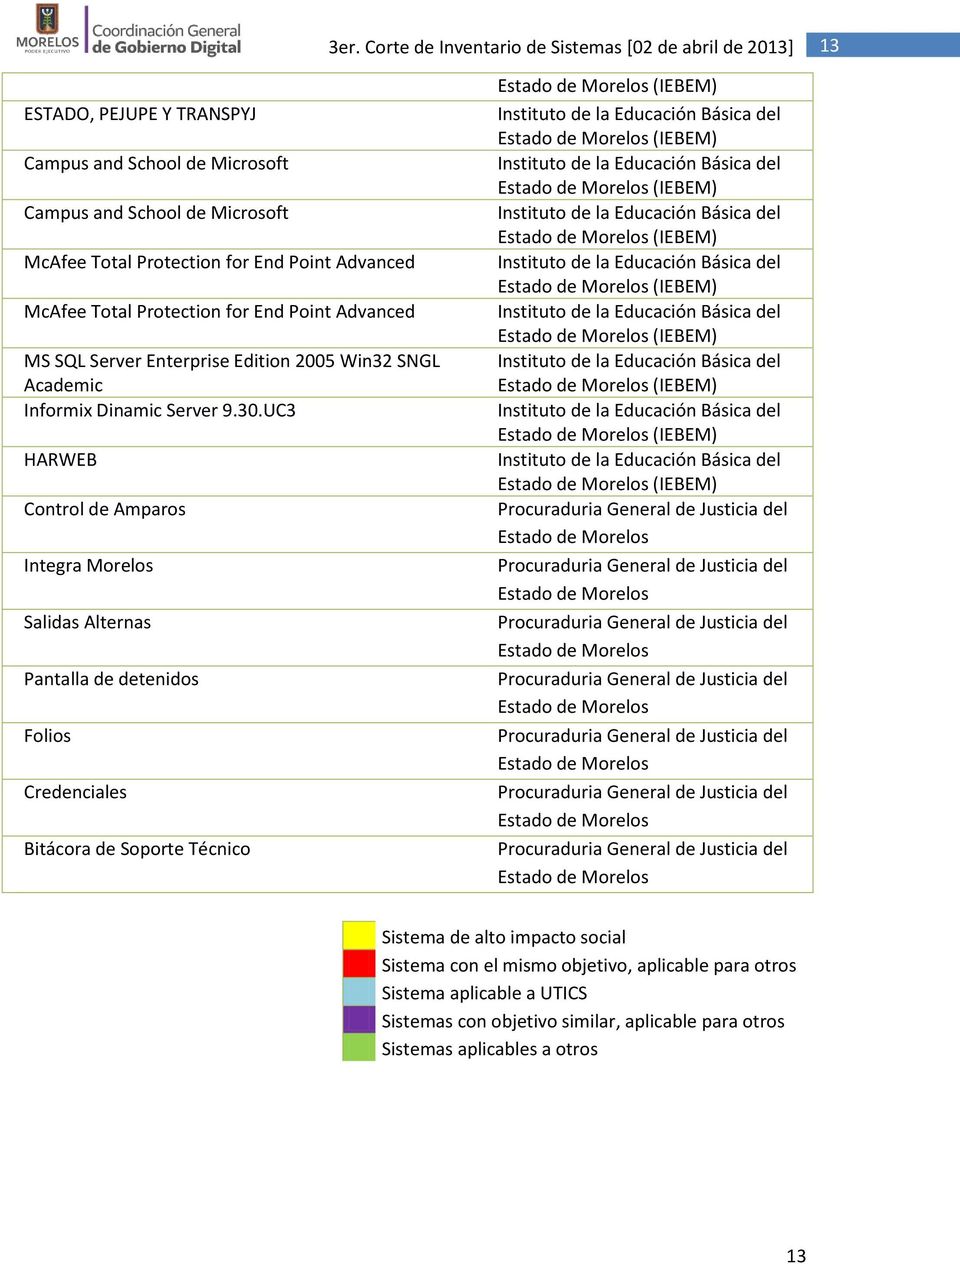 UC3 HARWEB Control de Amparos Integra Morelos Salidas Alternas Pantalla de detenidos Folios Credenciales Bitácora de Soporte Técnico Procuraduria General de Justicia del Estado de Morelos